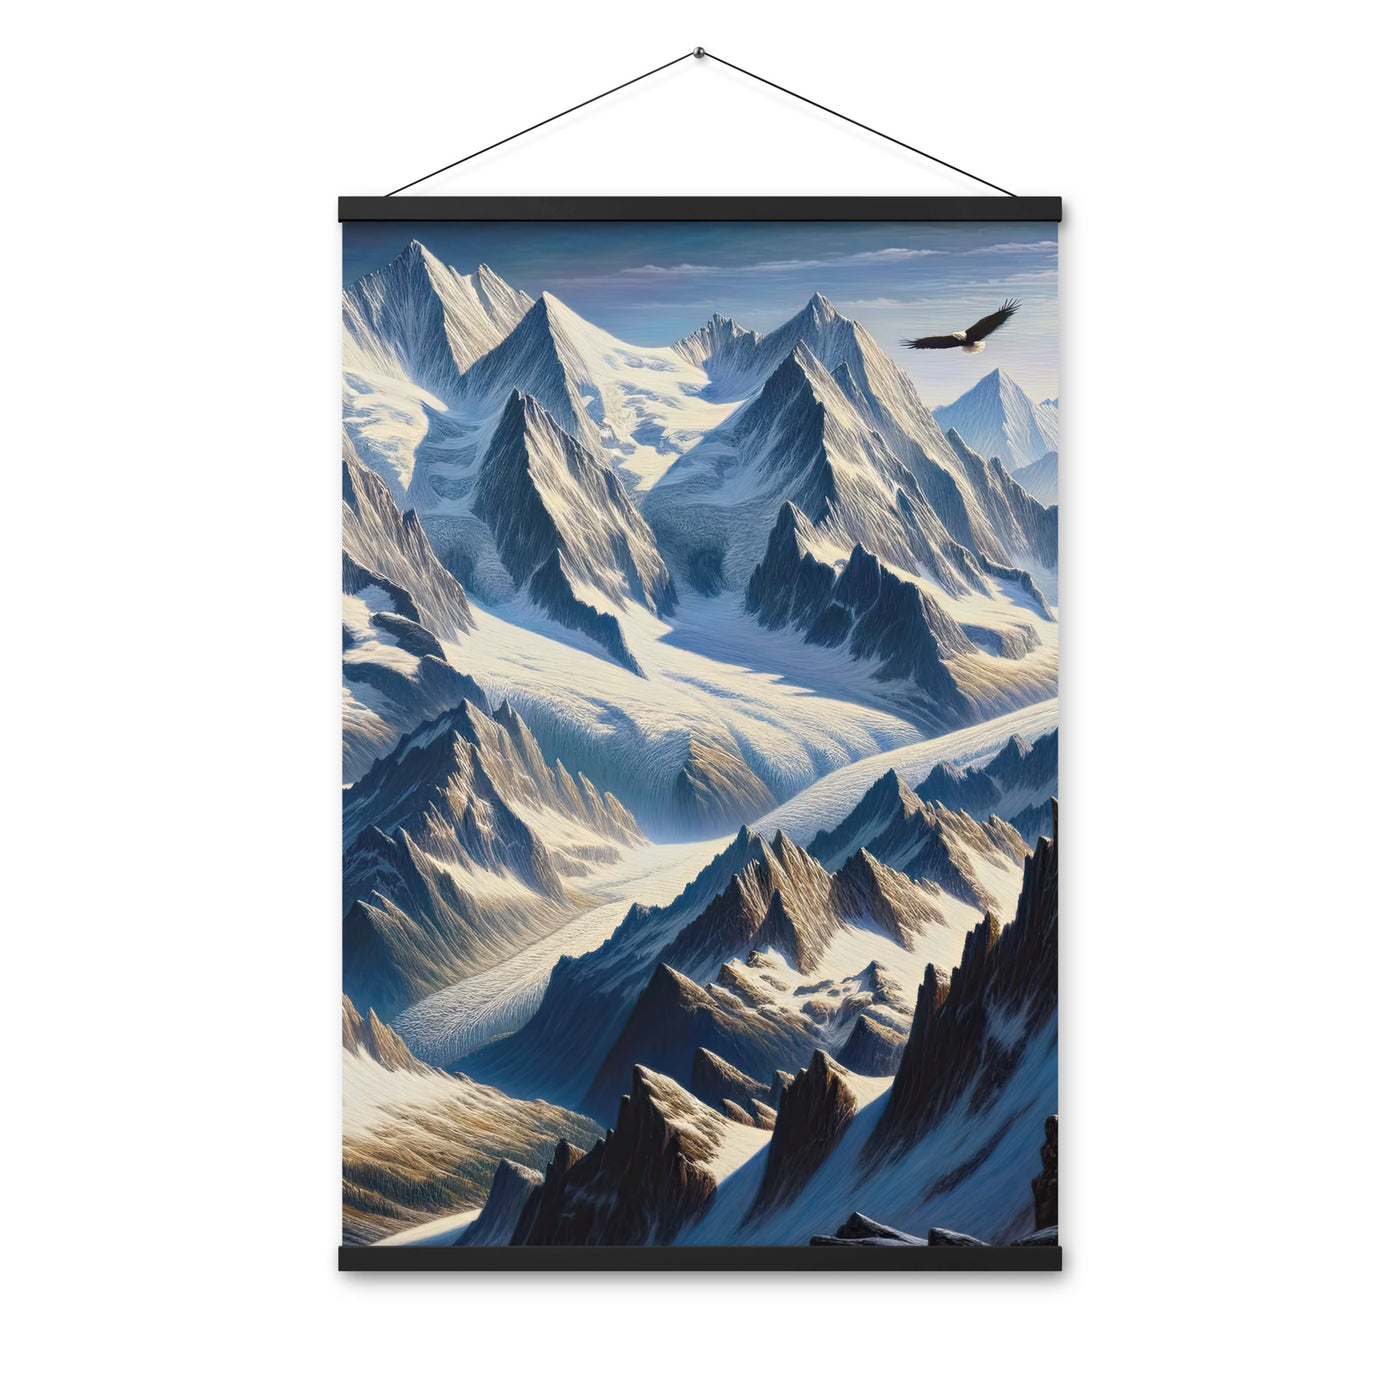 Ölgemälde der Alpen mit hervorgehobenen zerklüfteten Geländen im Licht und Schatten - Premium Poster mit Aufhängung berge xxx yyy zzz 61 x 91.4 cm